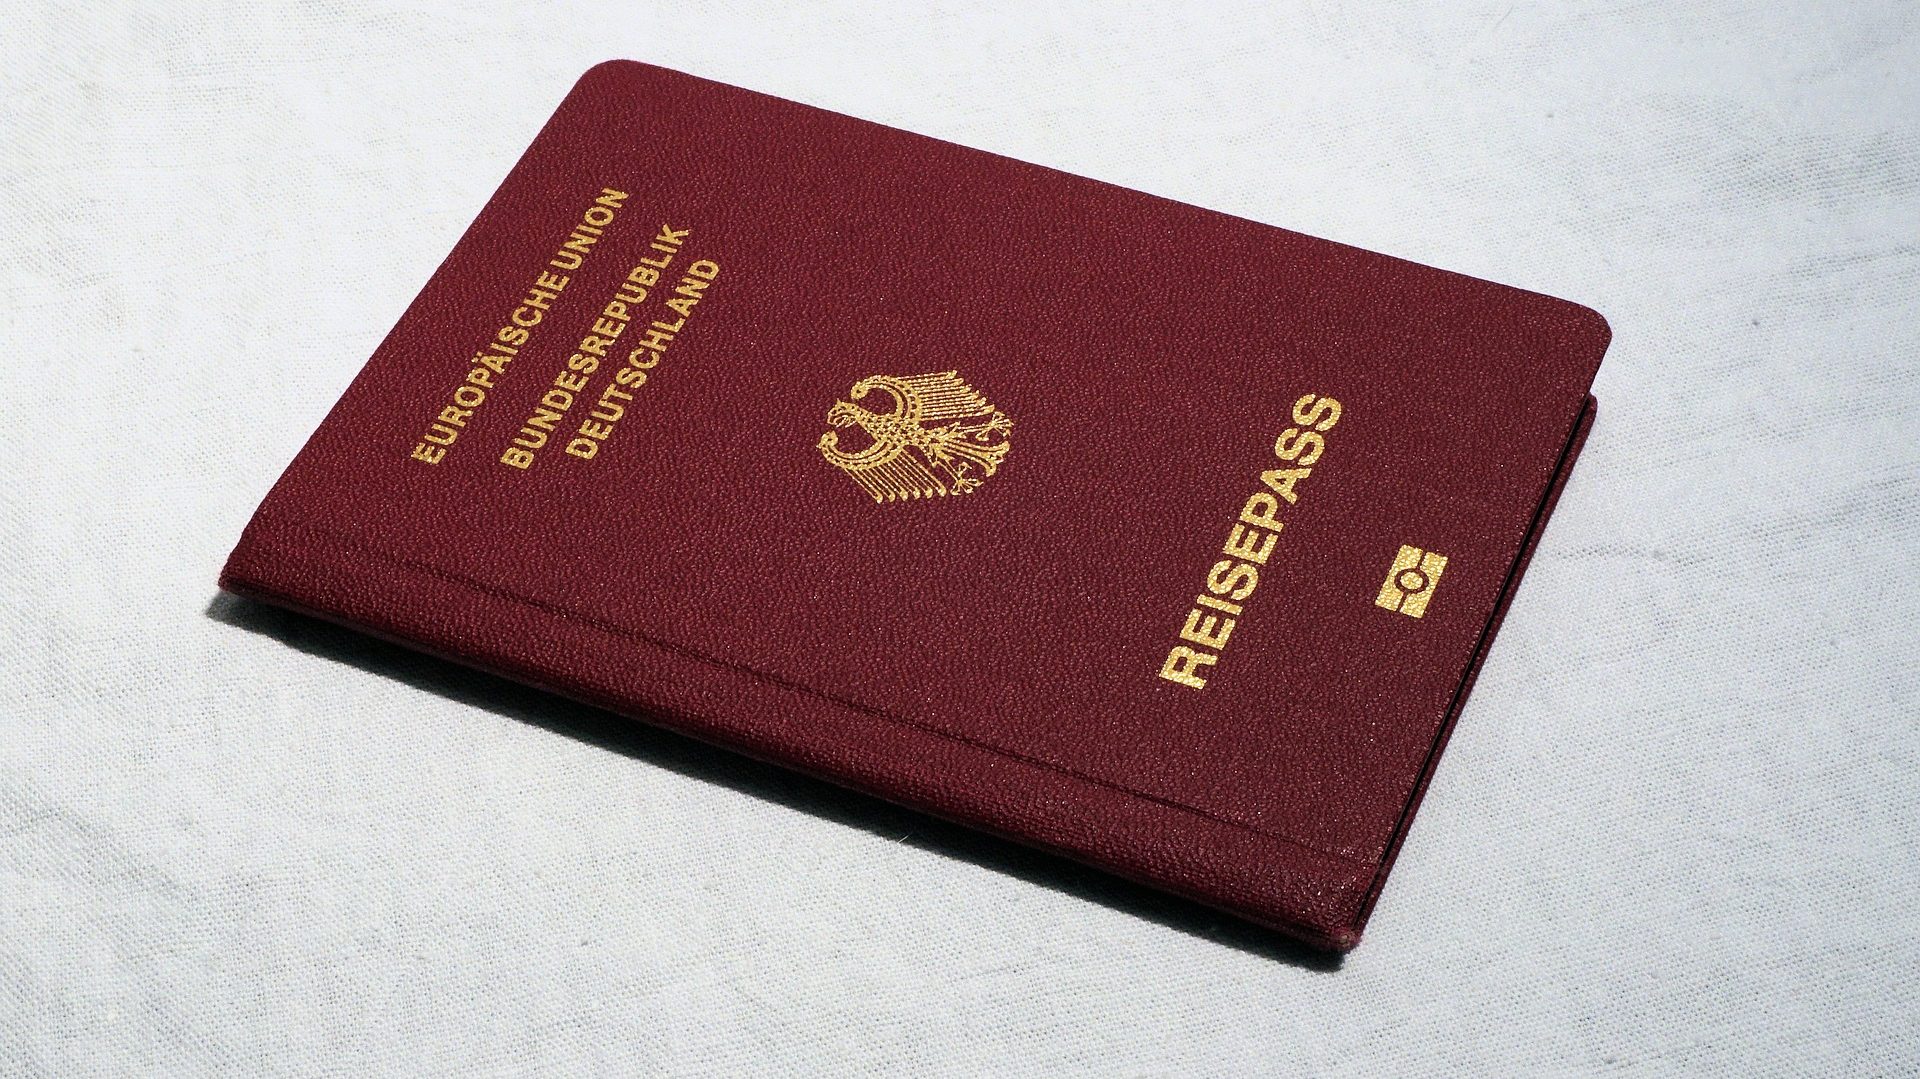 Reisepass statt Personalausweis